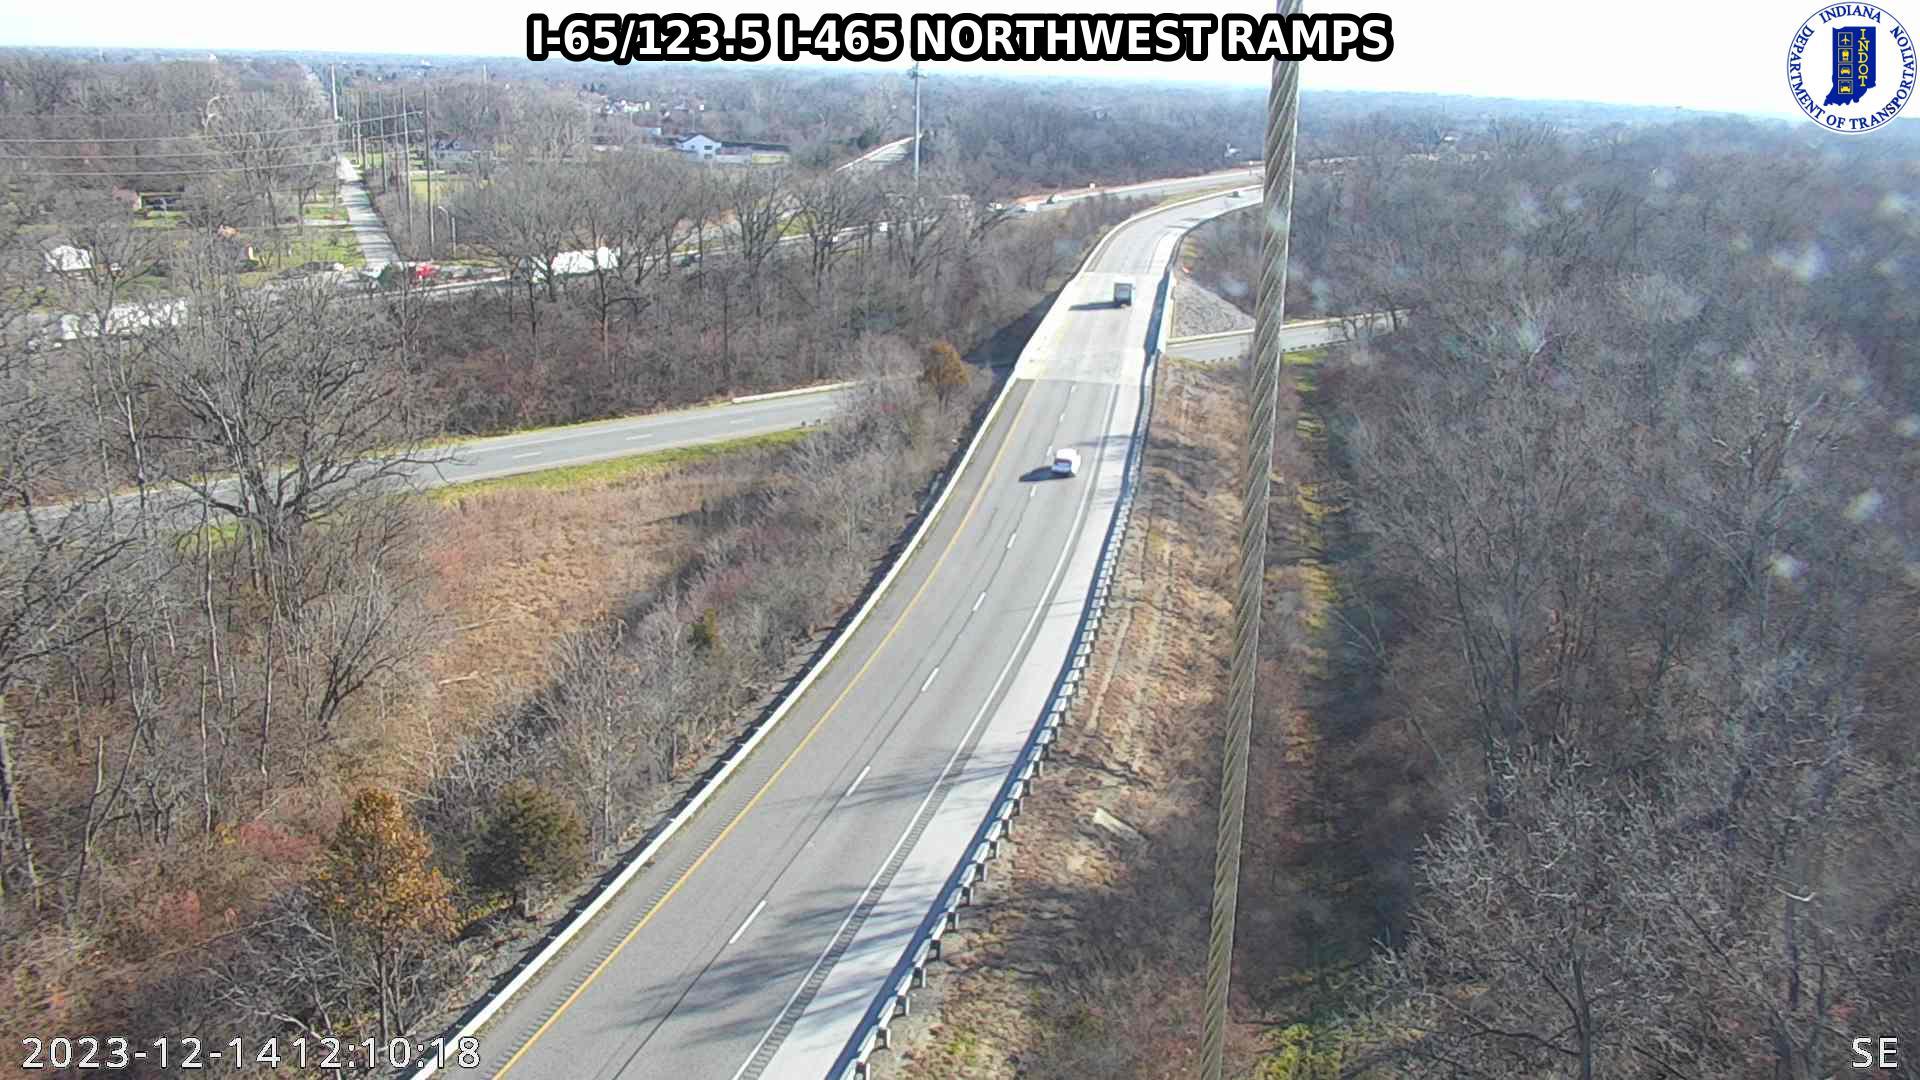 Traffic Cam Indianapolis: I-65: I-65/123.5 I-465 NORTHWEST RAMPS : I-65/123.5 I-465 NORTHWEST RAMPS